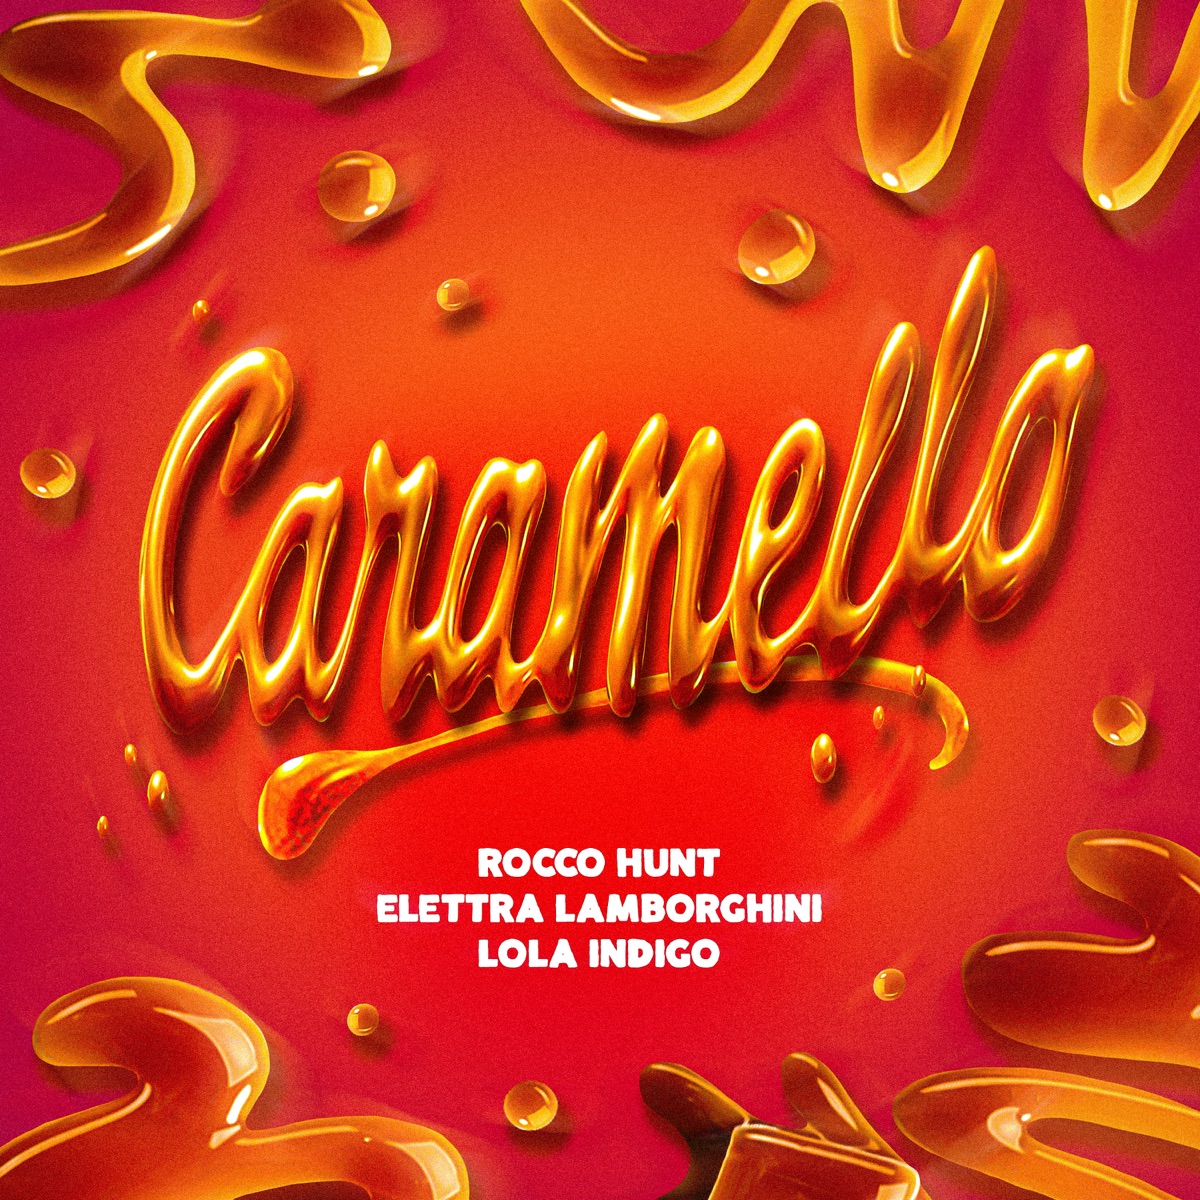 ‎Caramello - Single - Album di Rocco Hunt, Elettra Lamborghini & Lola  Índigo - Apple Music